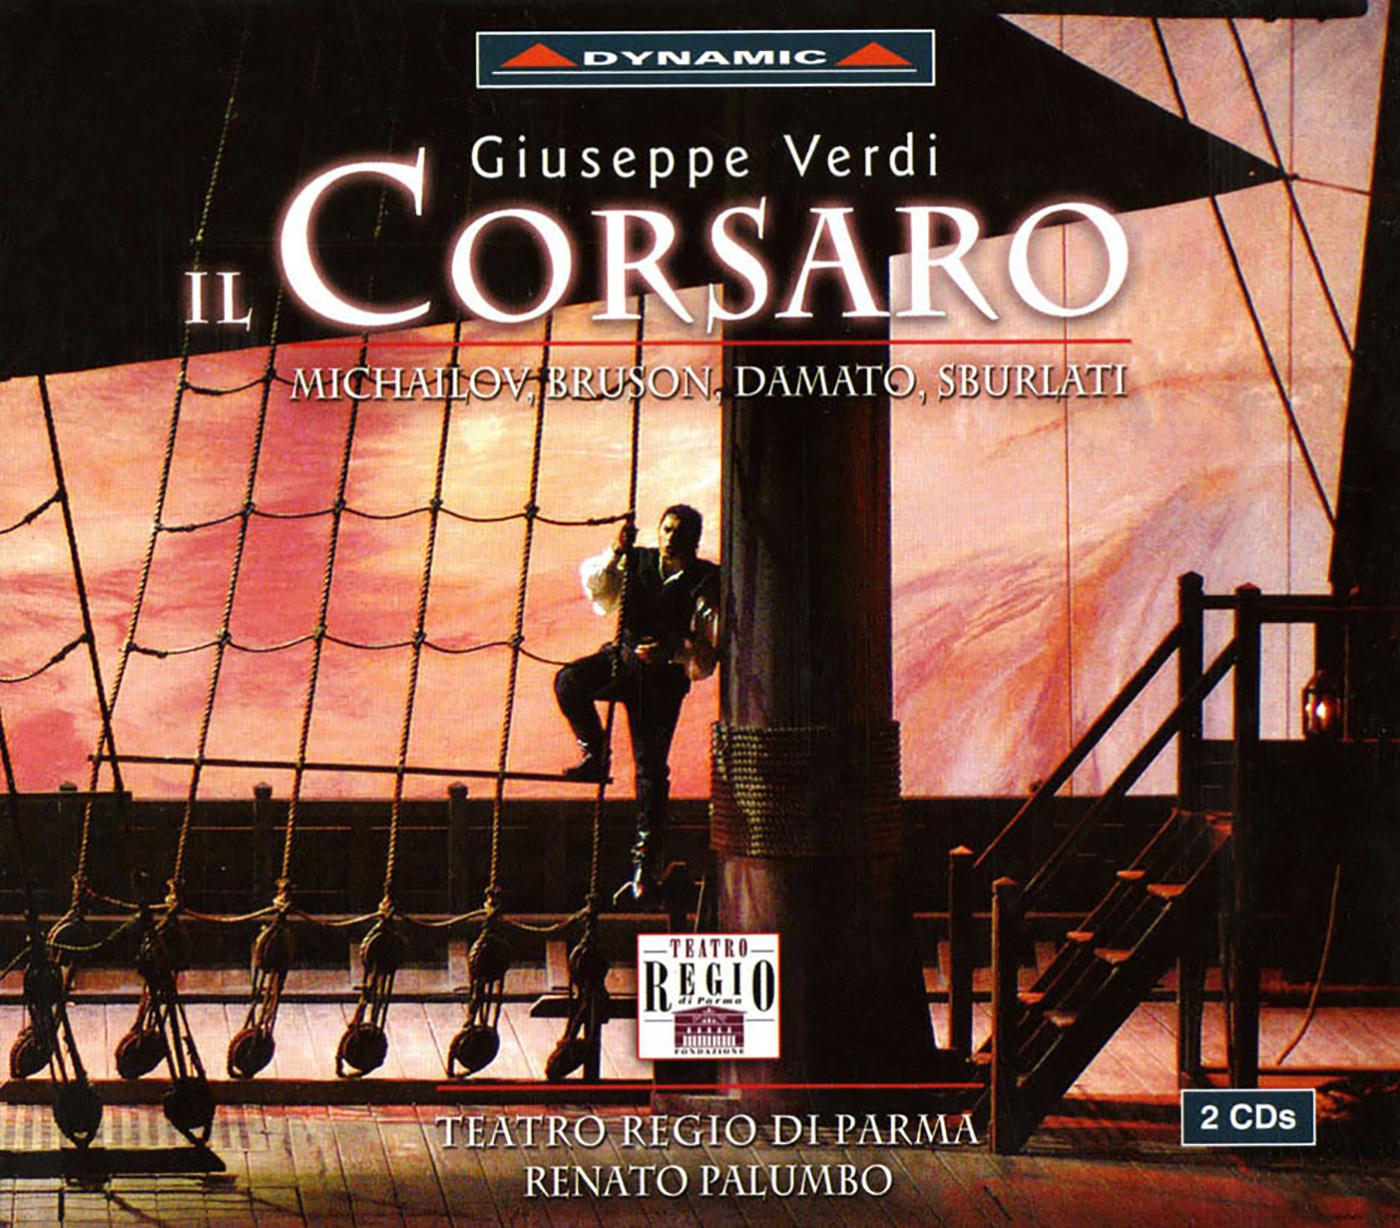 Zvetan Michailov - Il corsaro:Act I Scene 3: Della brezza col favore (Giovanni, Corrado)